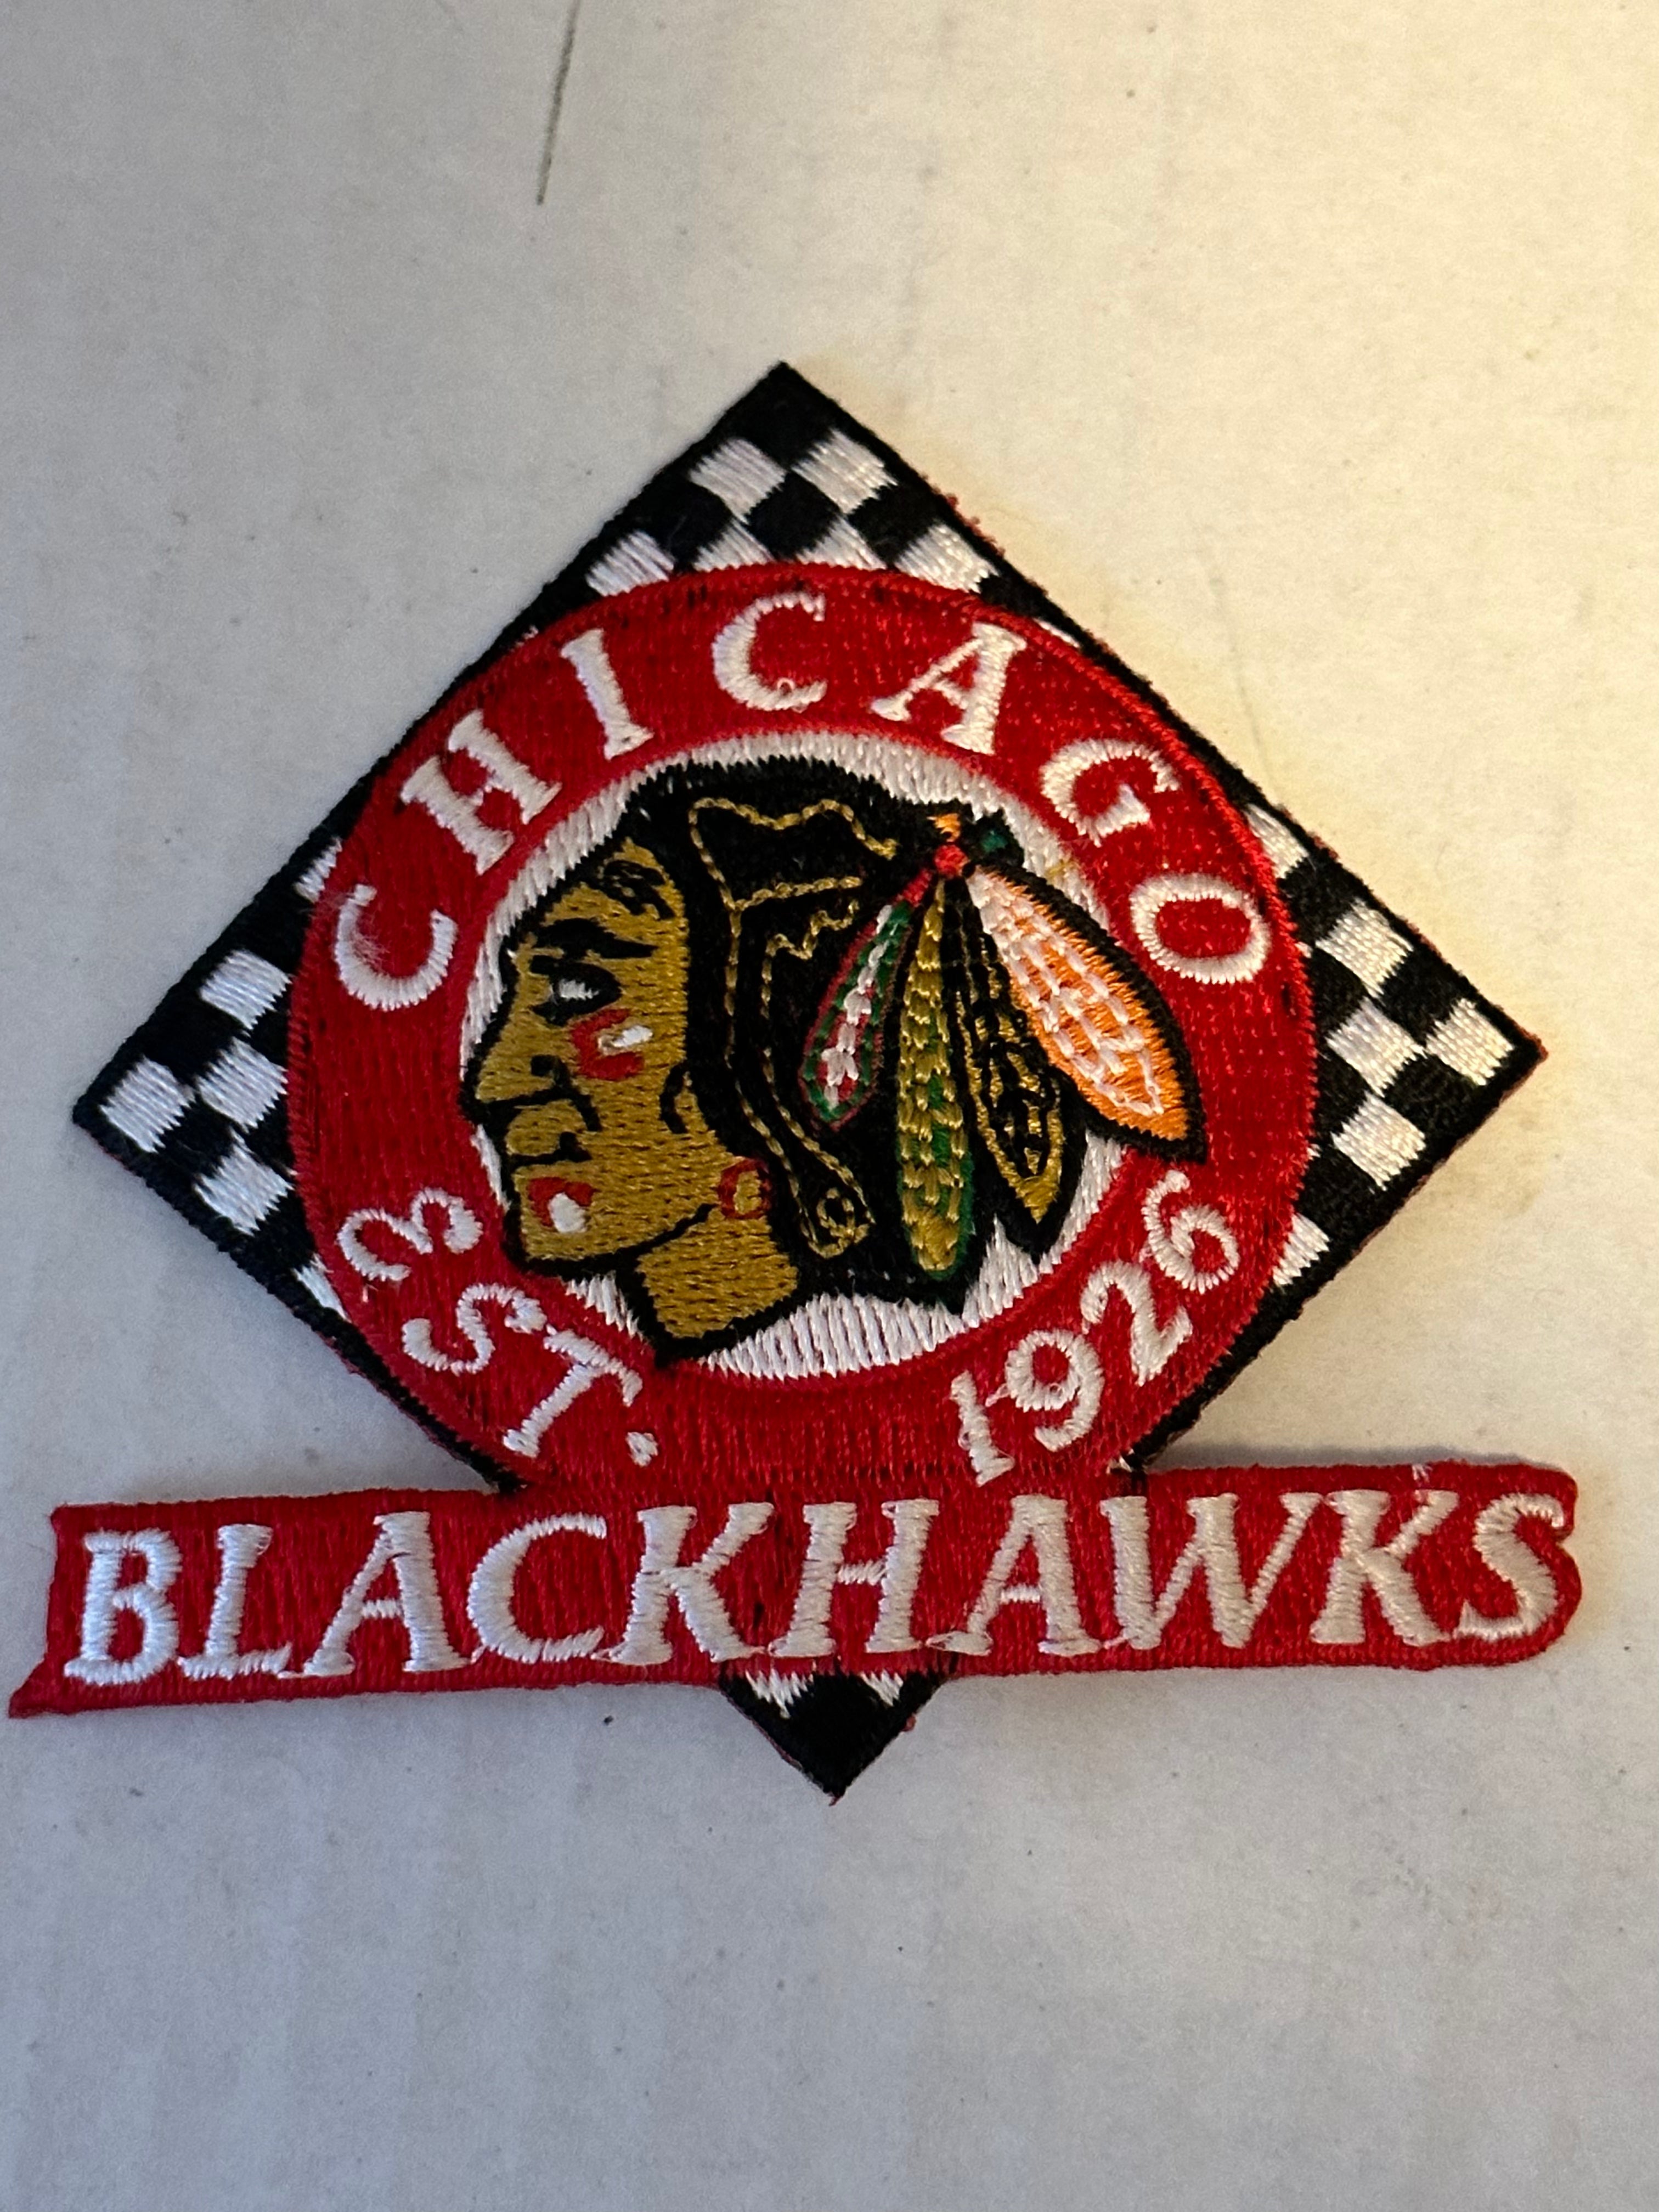 Chicago Blackhawks vintage hockey patch 1980s